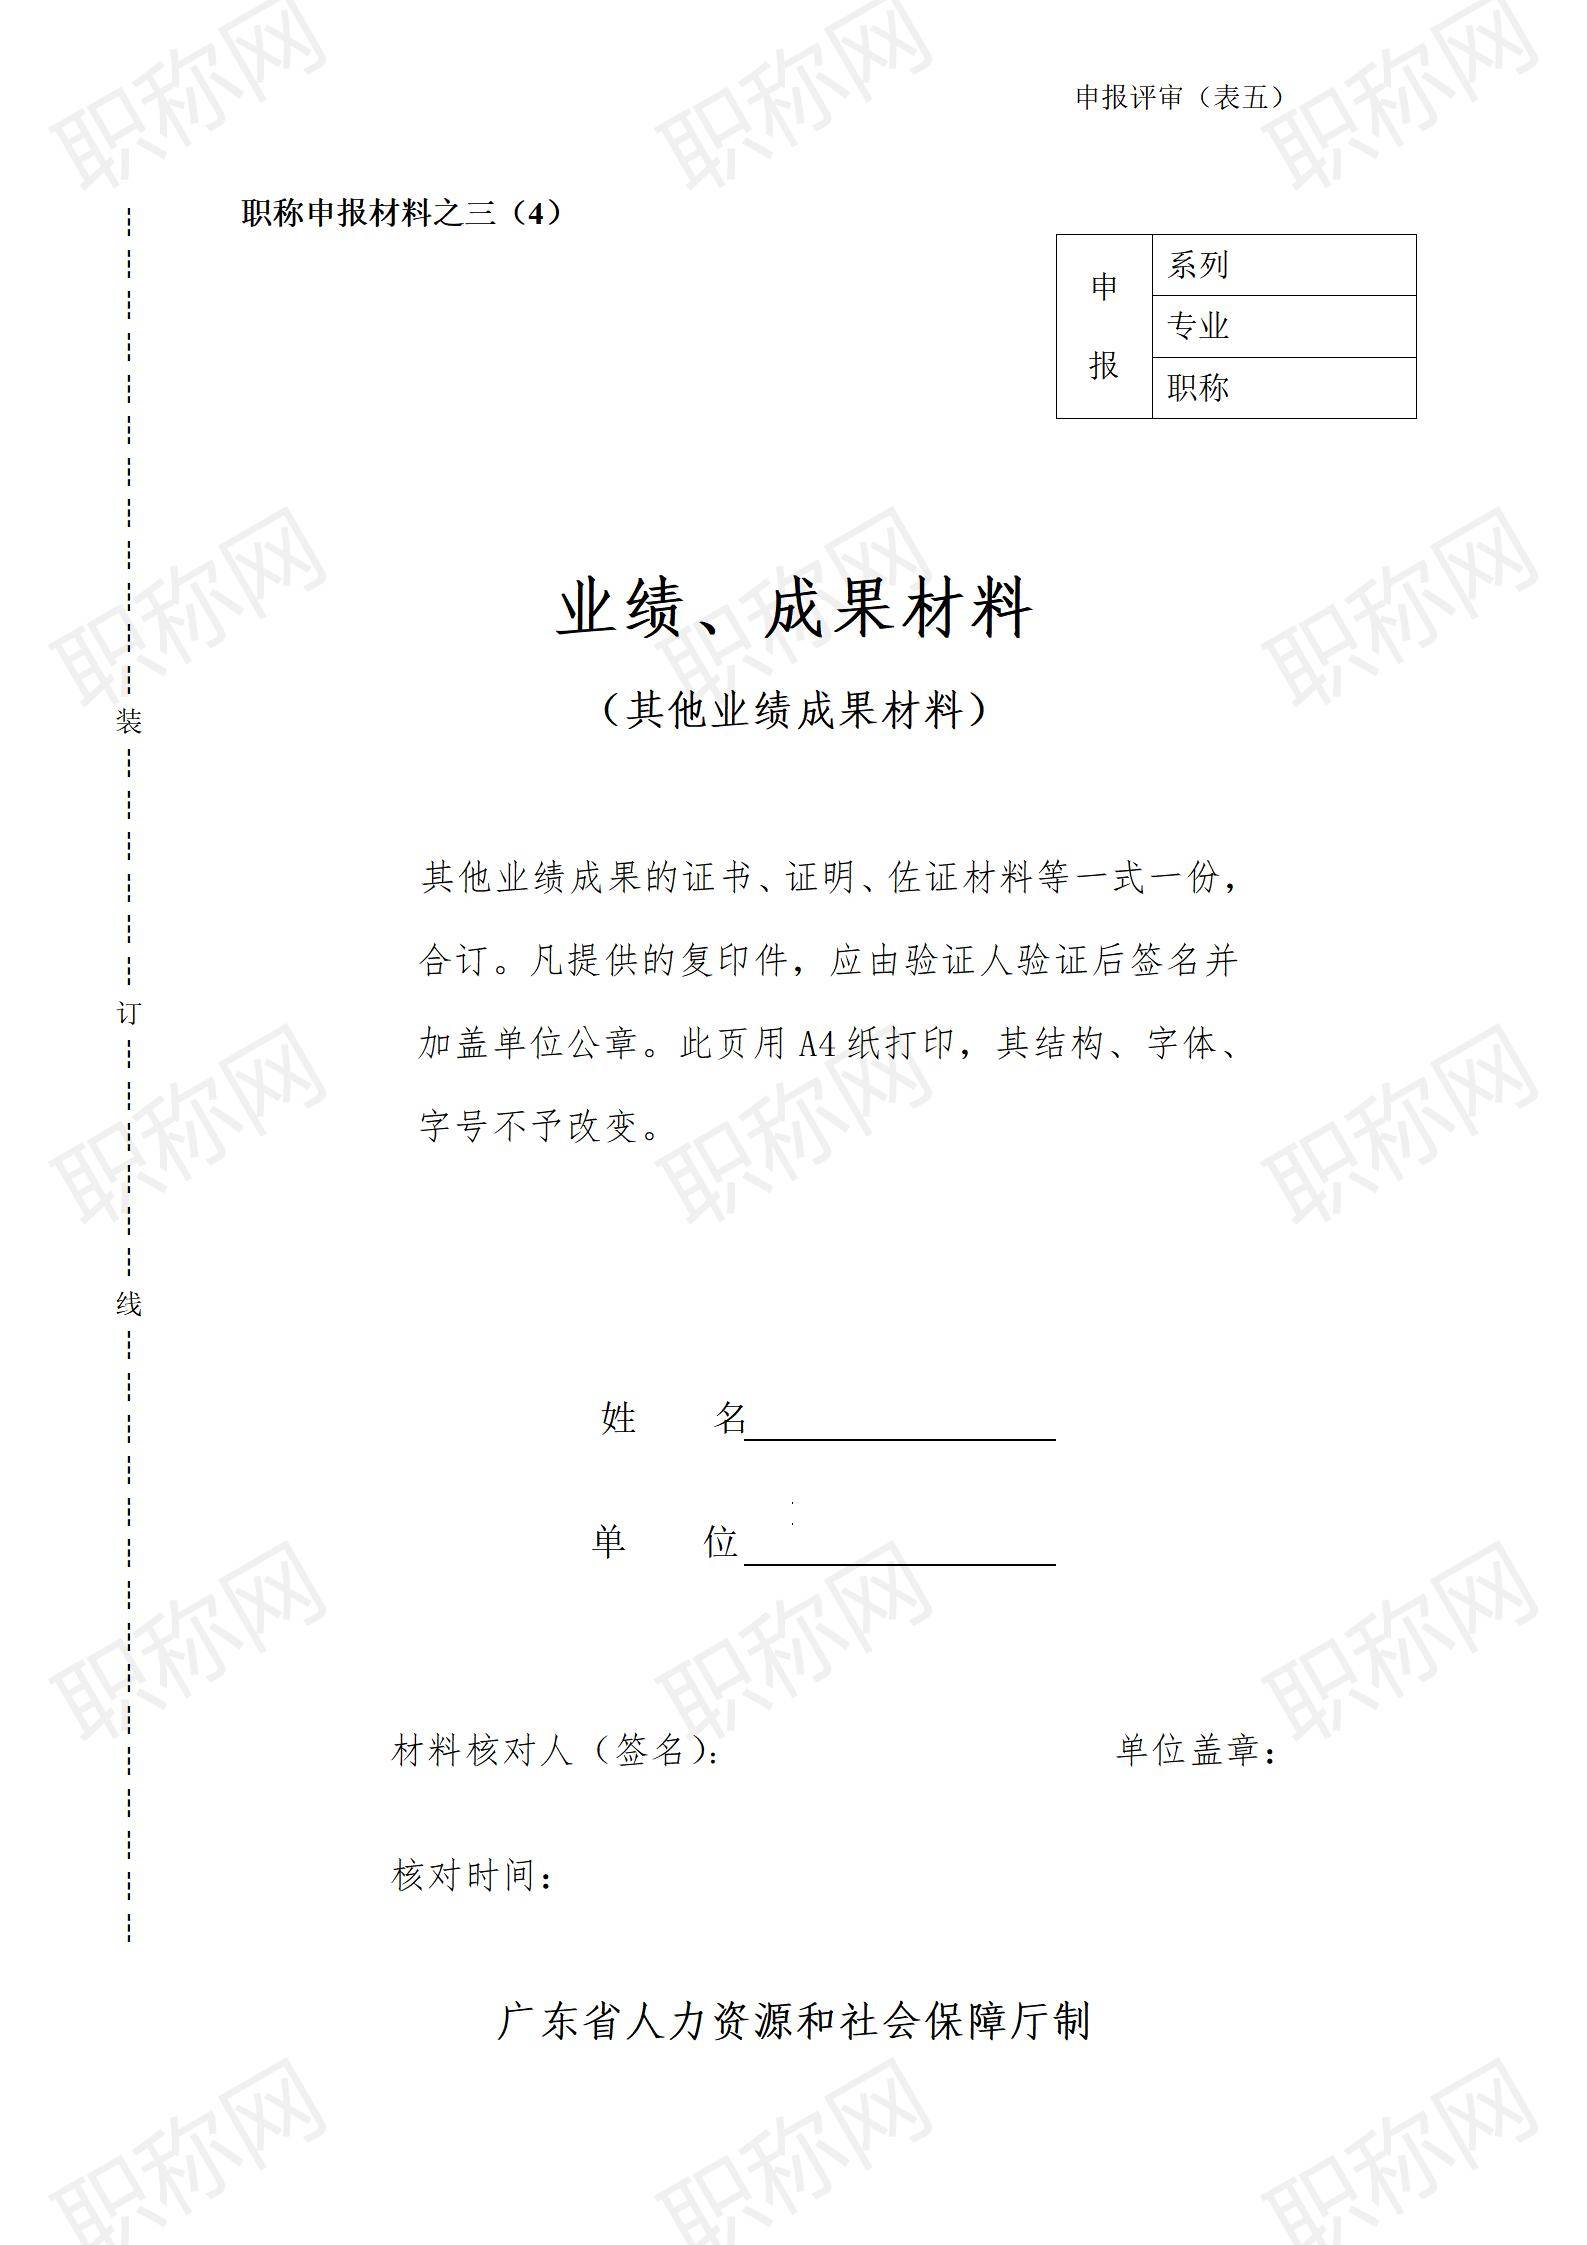 广东省职称评审业绩及成果材料填写表_04.jpg